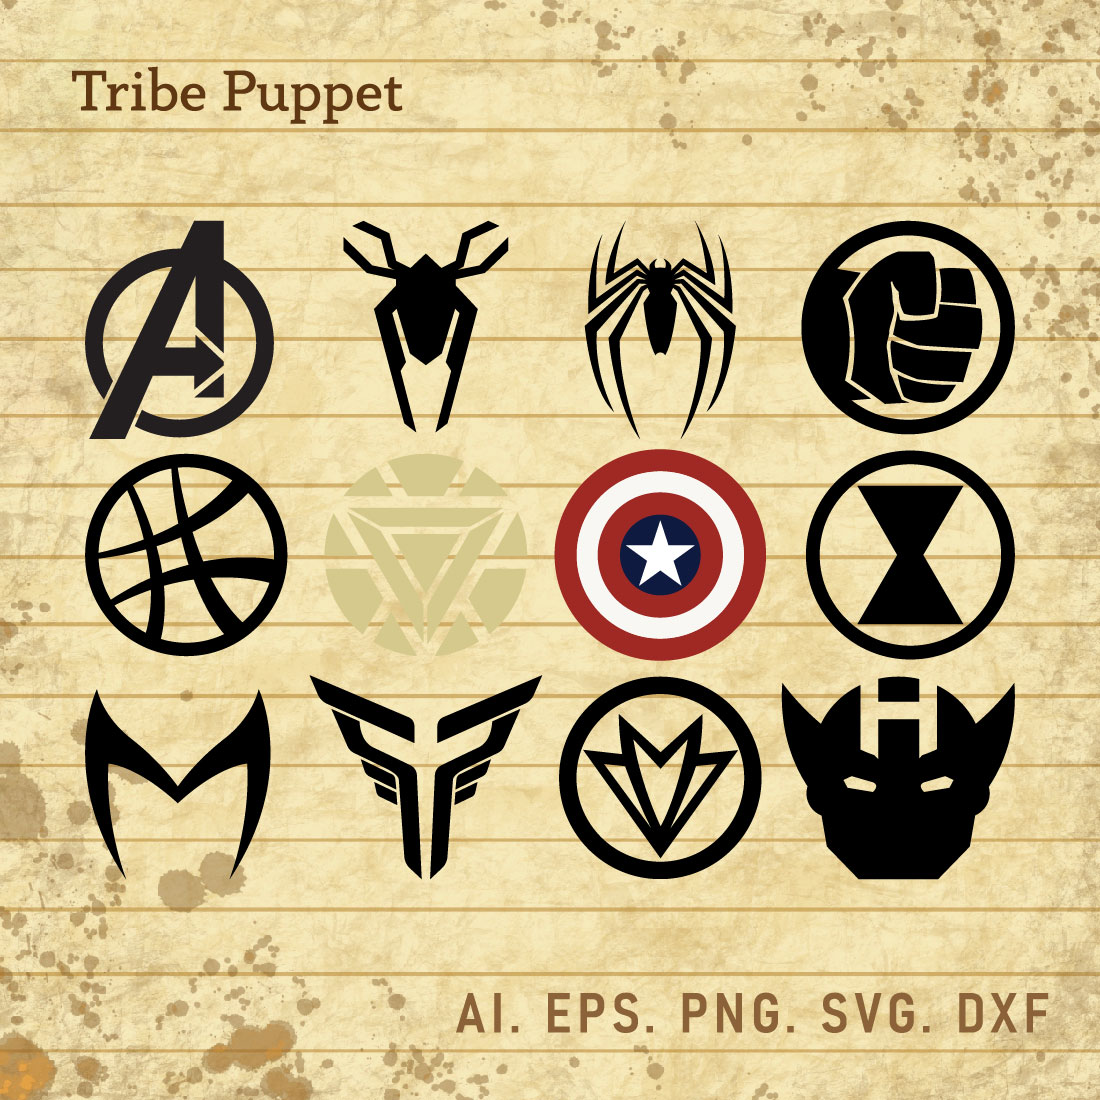 Avengers Endgame New Logo Drawing!! How to draw Avengers Endgame Logo -  YouTube